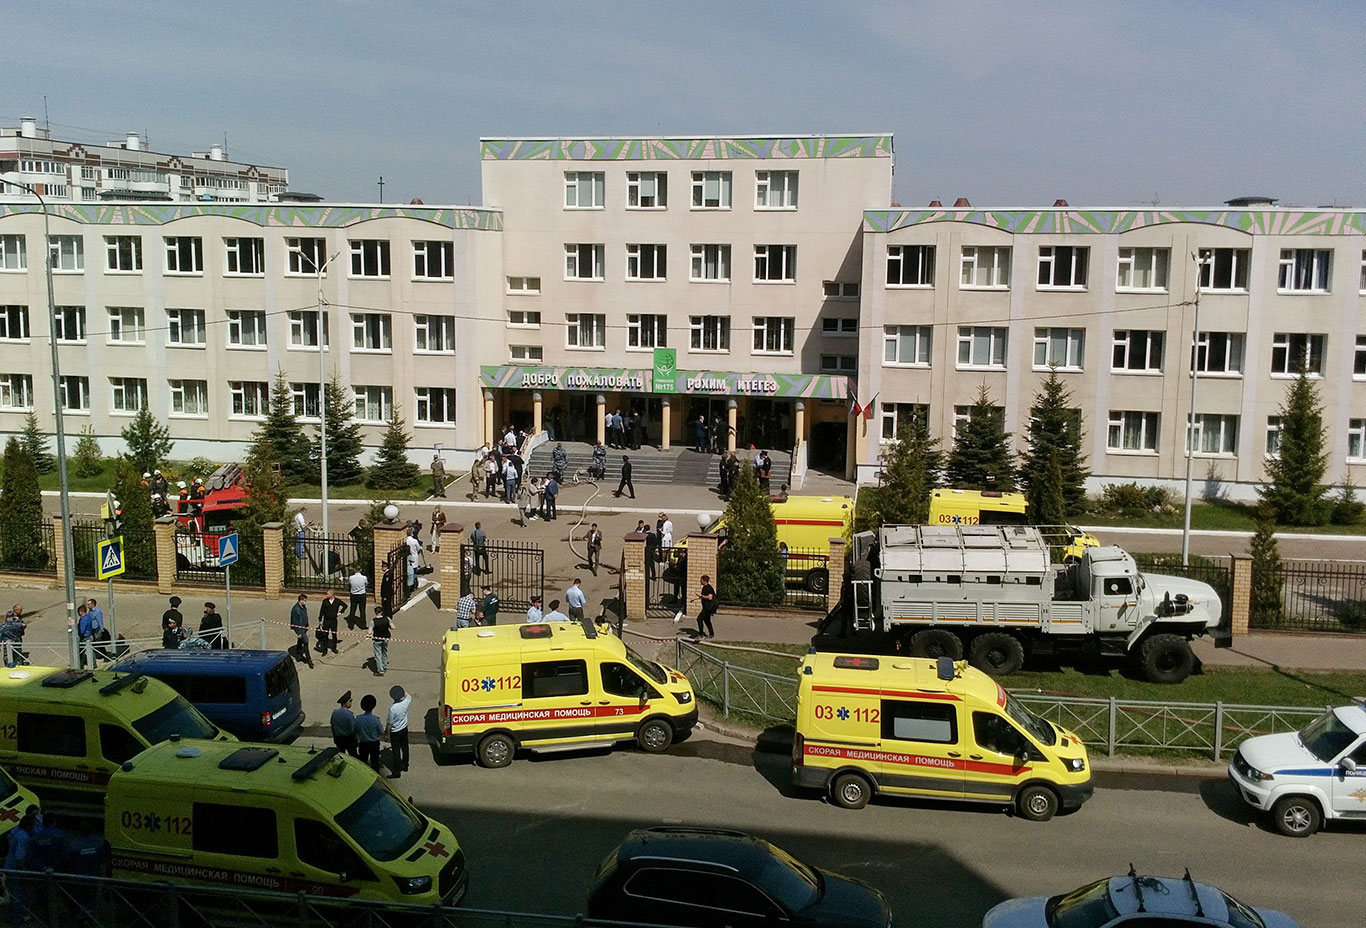 Nove pessoas foram mortas, entre elas sete crianças, e outras 16 pessoas ficaram feridas em um atentado a tiros em uma escola na cidade de Kazan, na Rússia (Foto: Reuters)